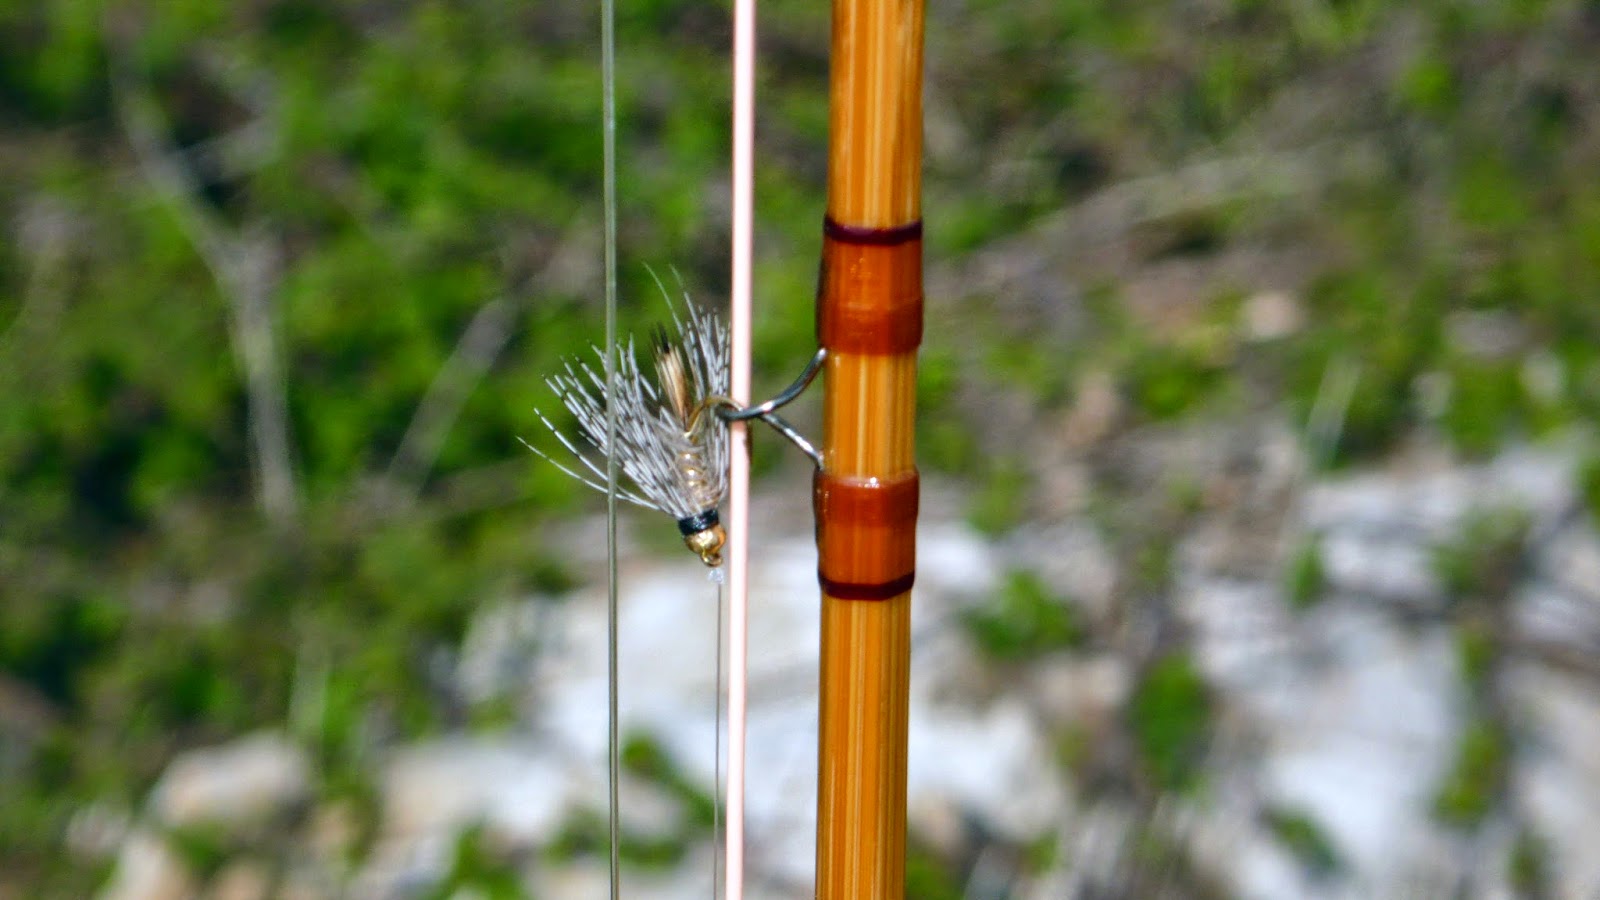 TruchaBoo. Pesca a mosca con Bamboo: Cómo elegir una caña de bambú